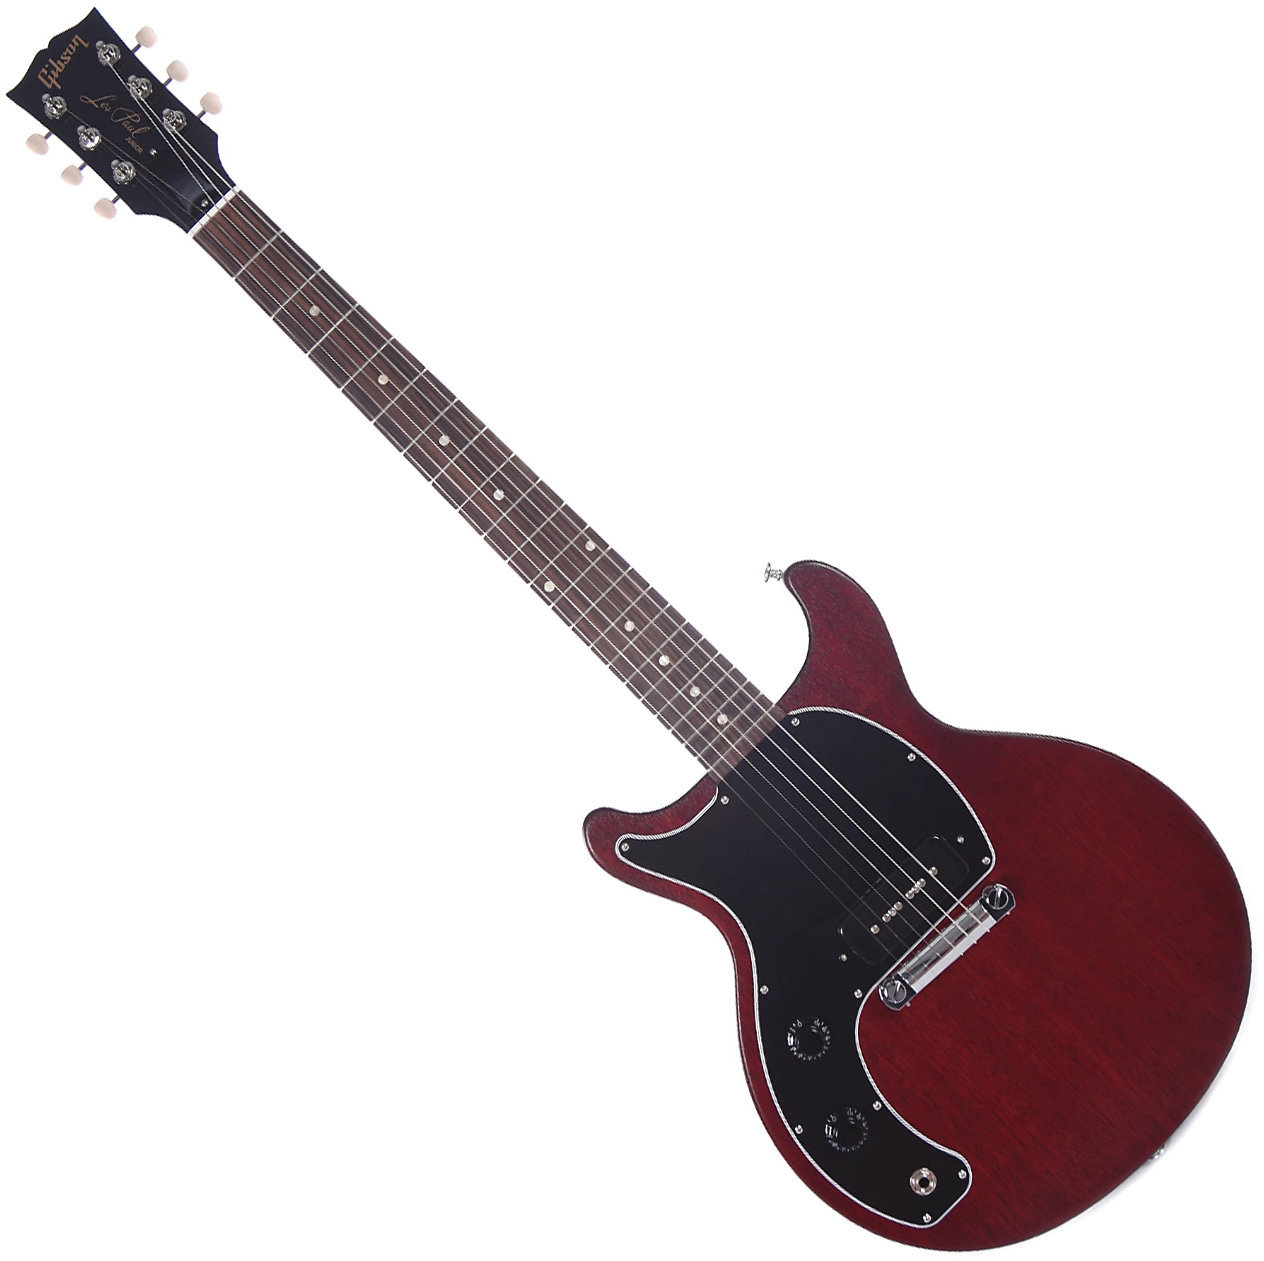 Ηλεκτρική Κιθάρα για Αριστερόχειρες Gibson Les Paul Junior Tribute DC 2019 Worn Cherry Lefty